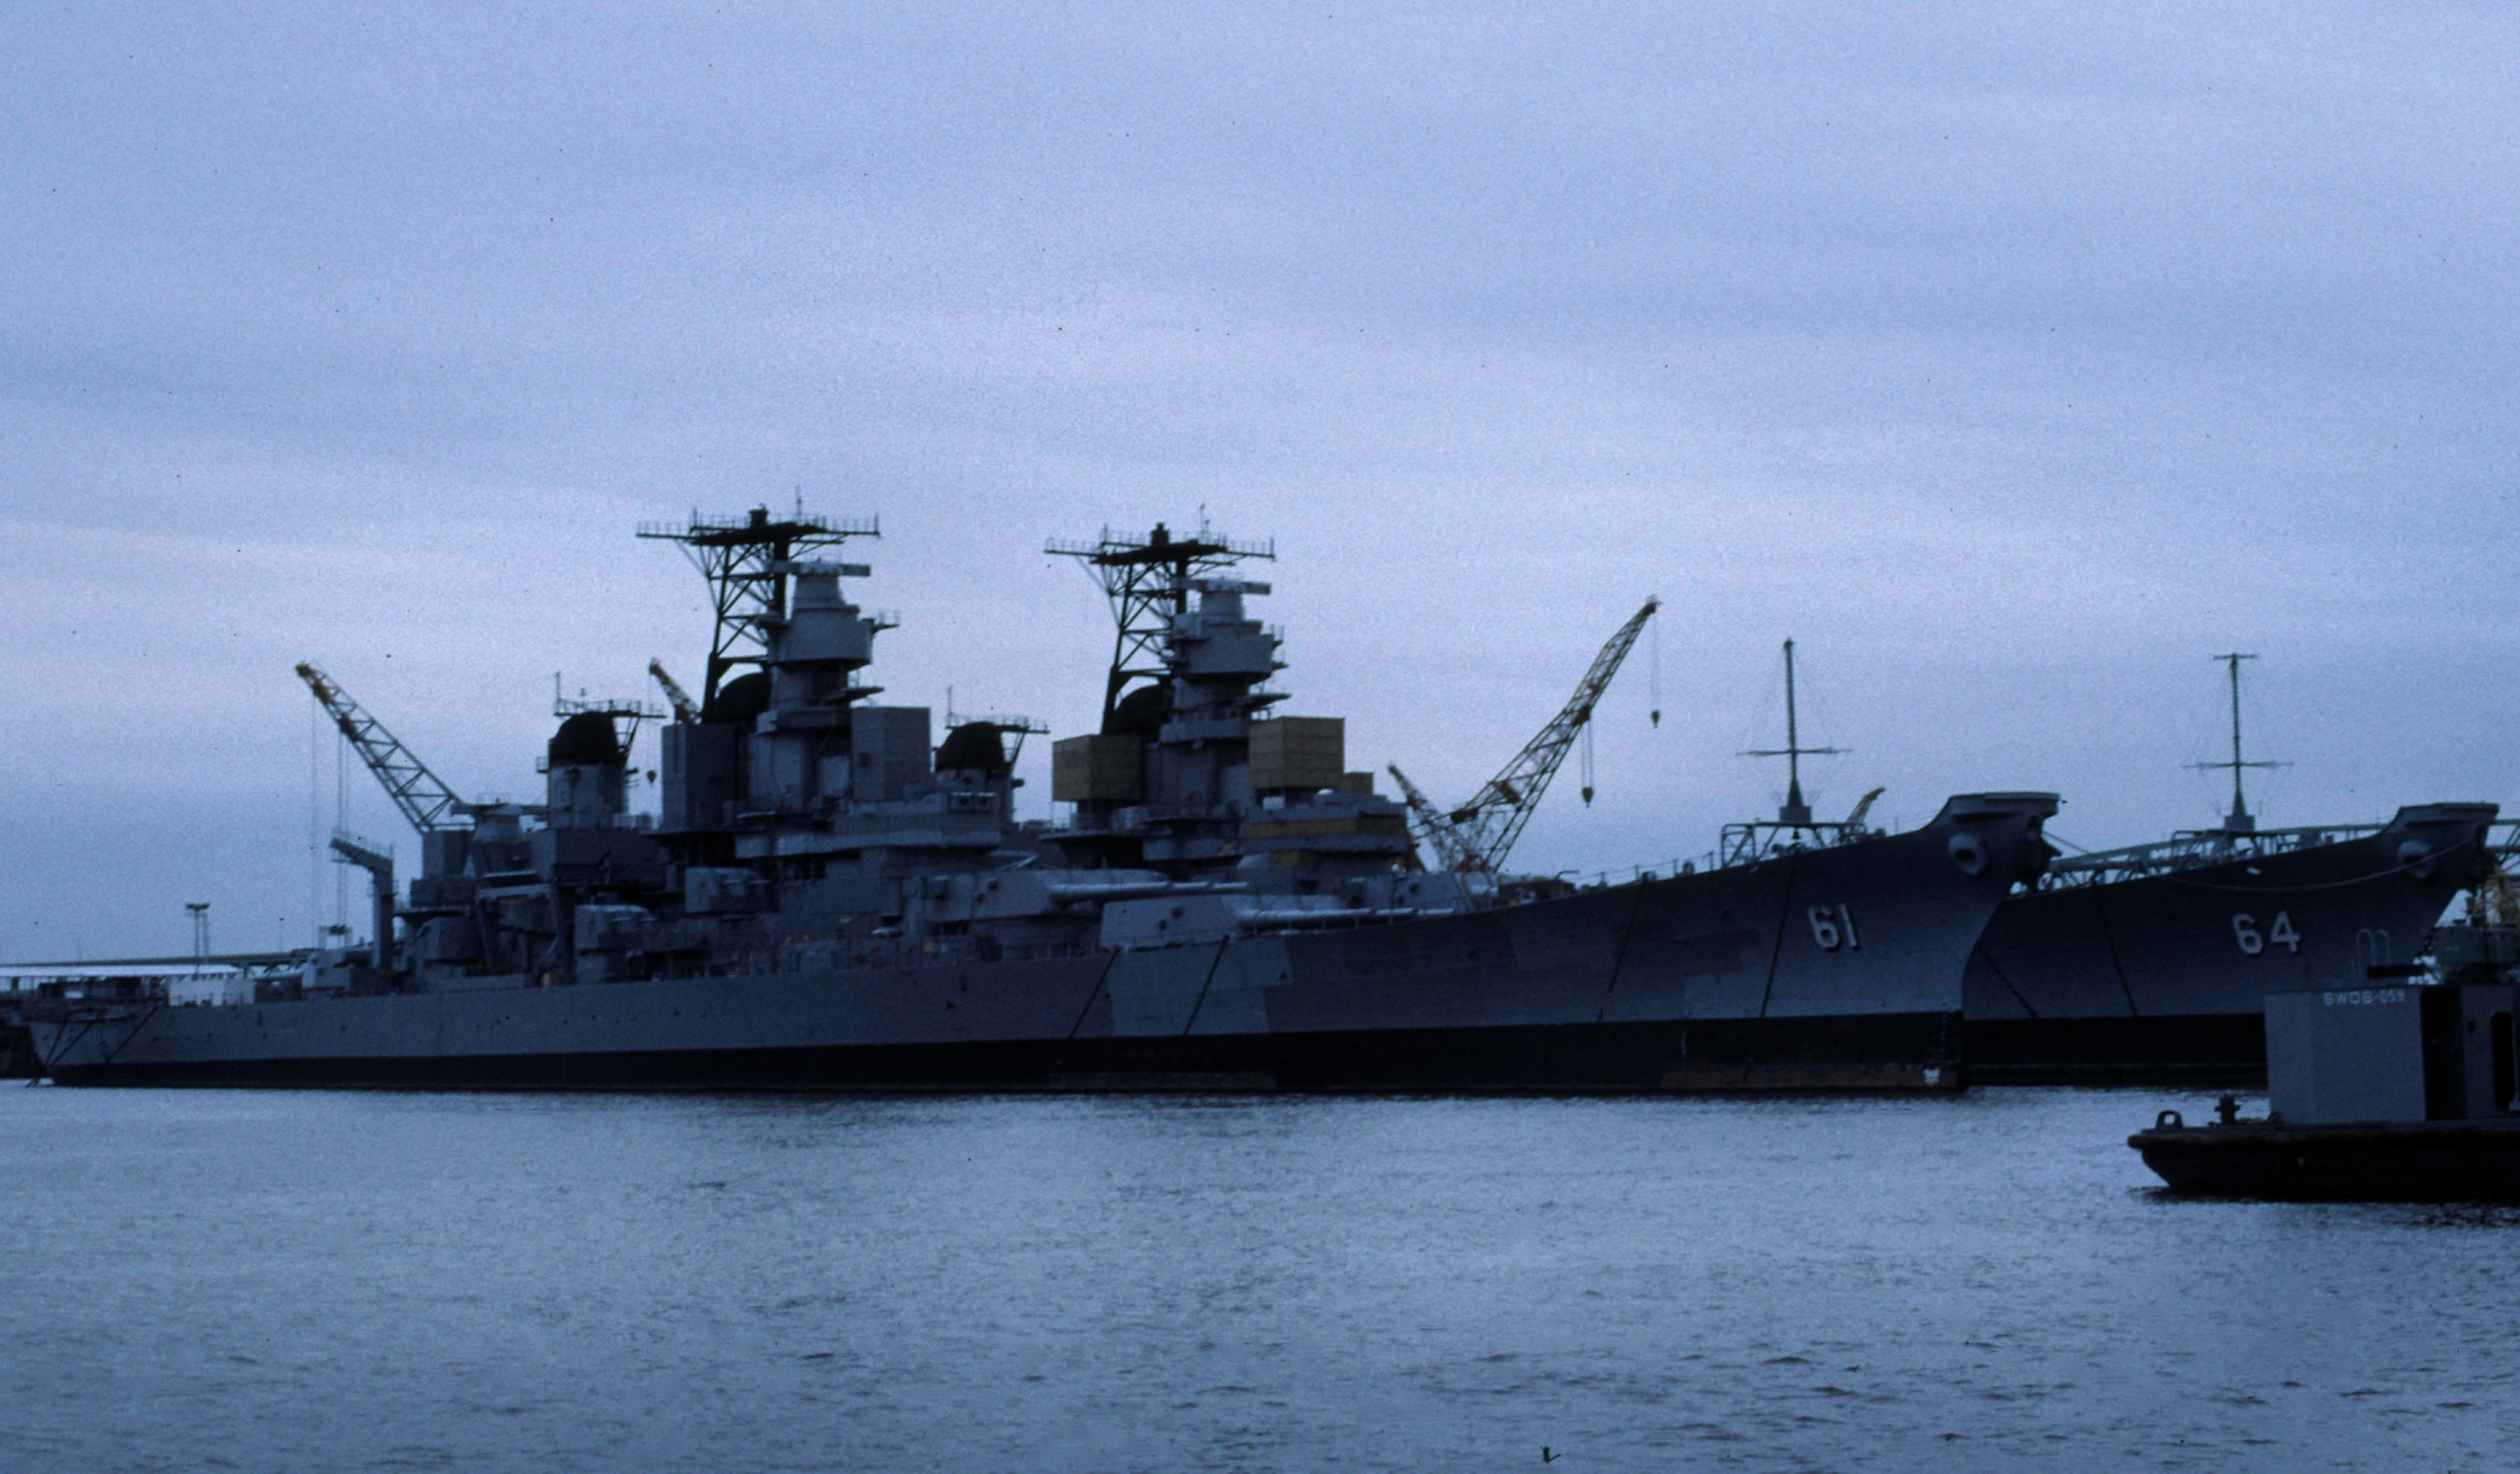 USS Iowa and USS Wisconsin